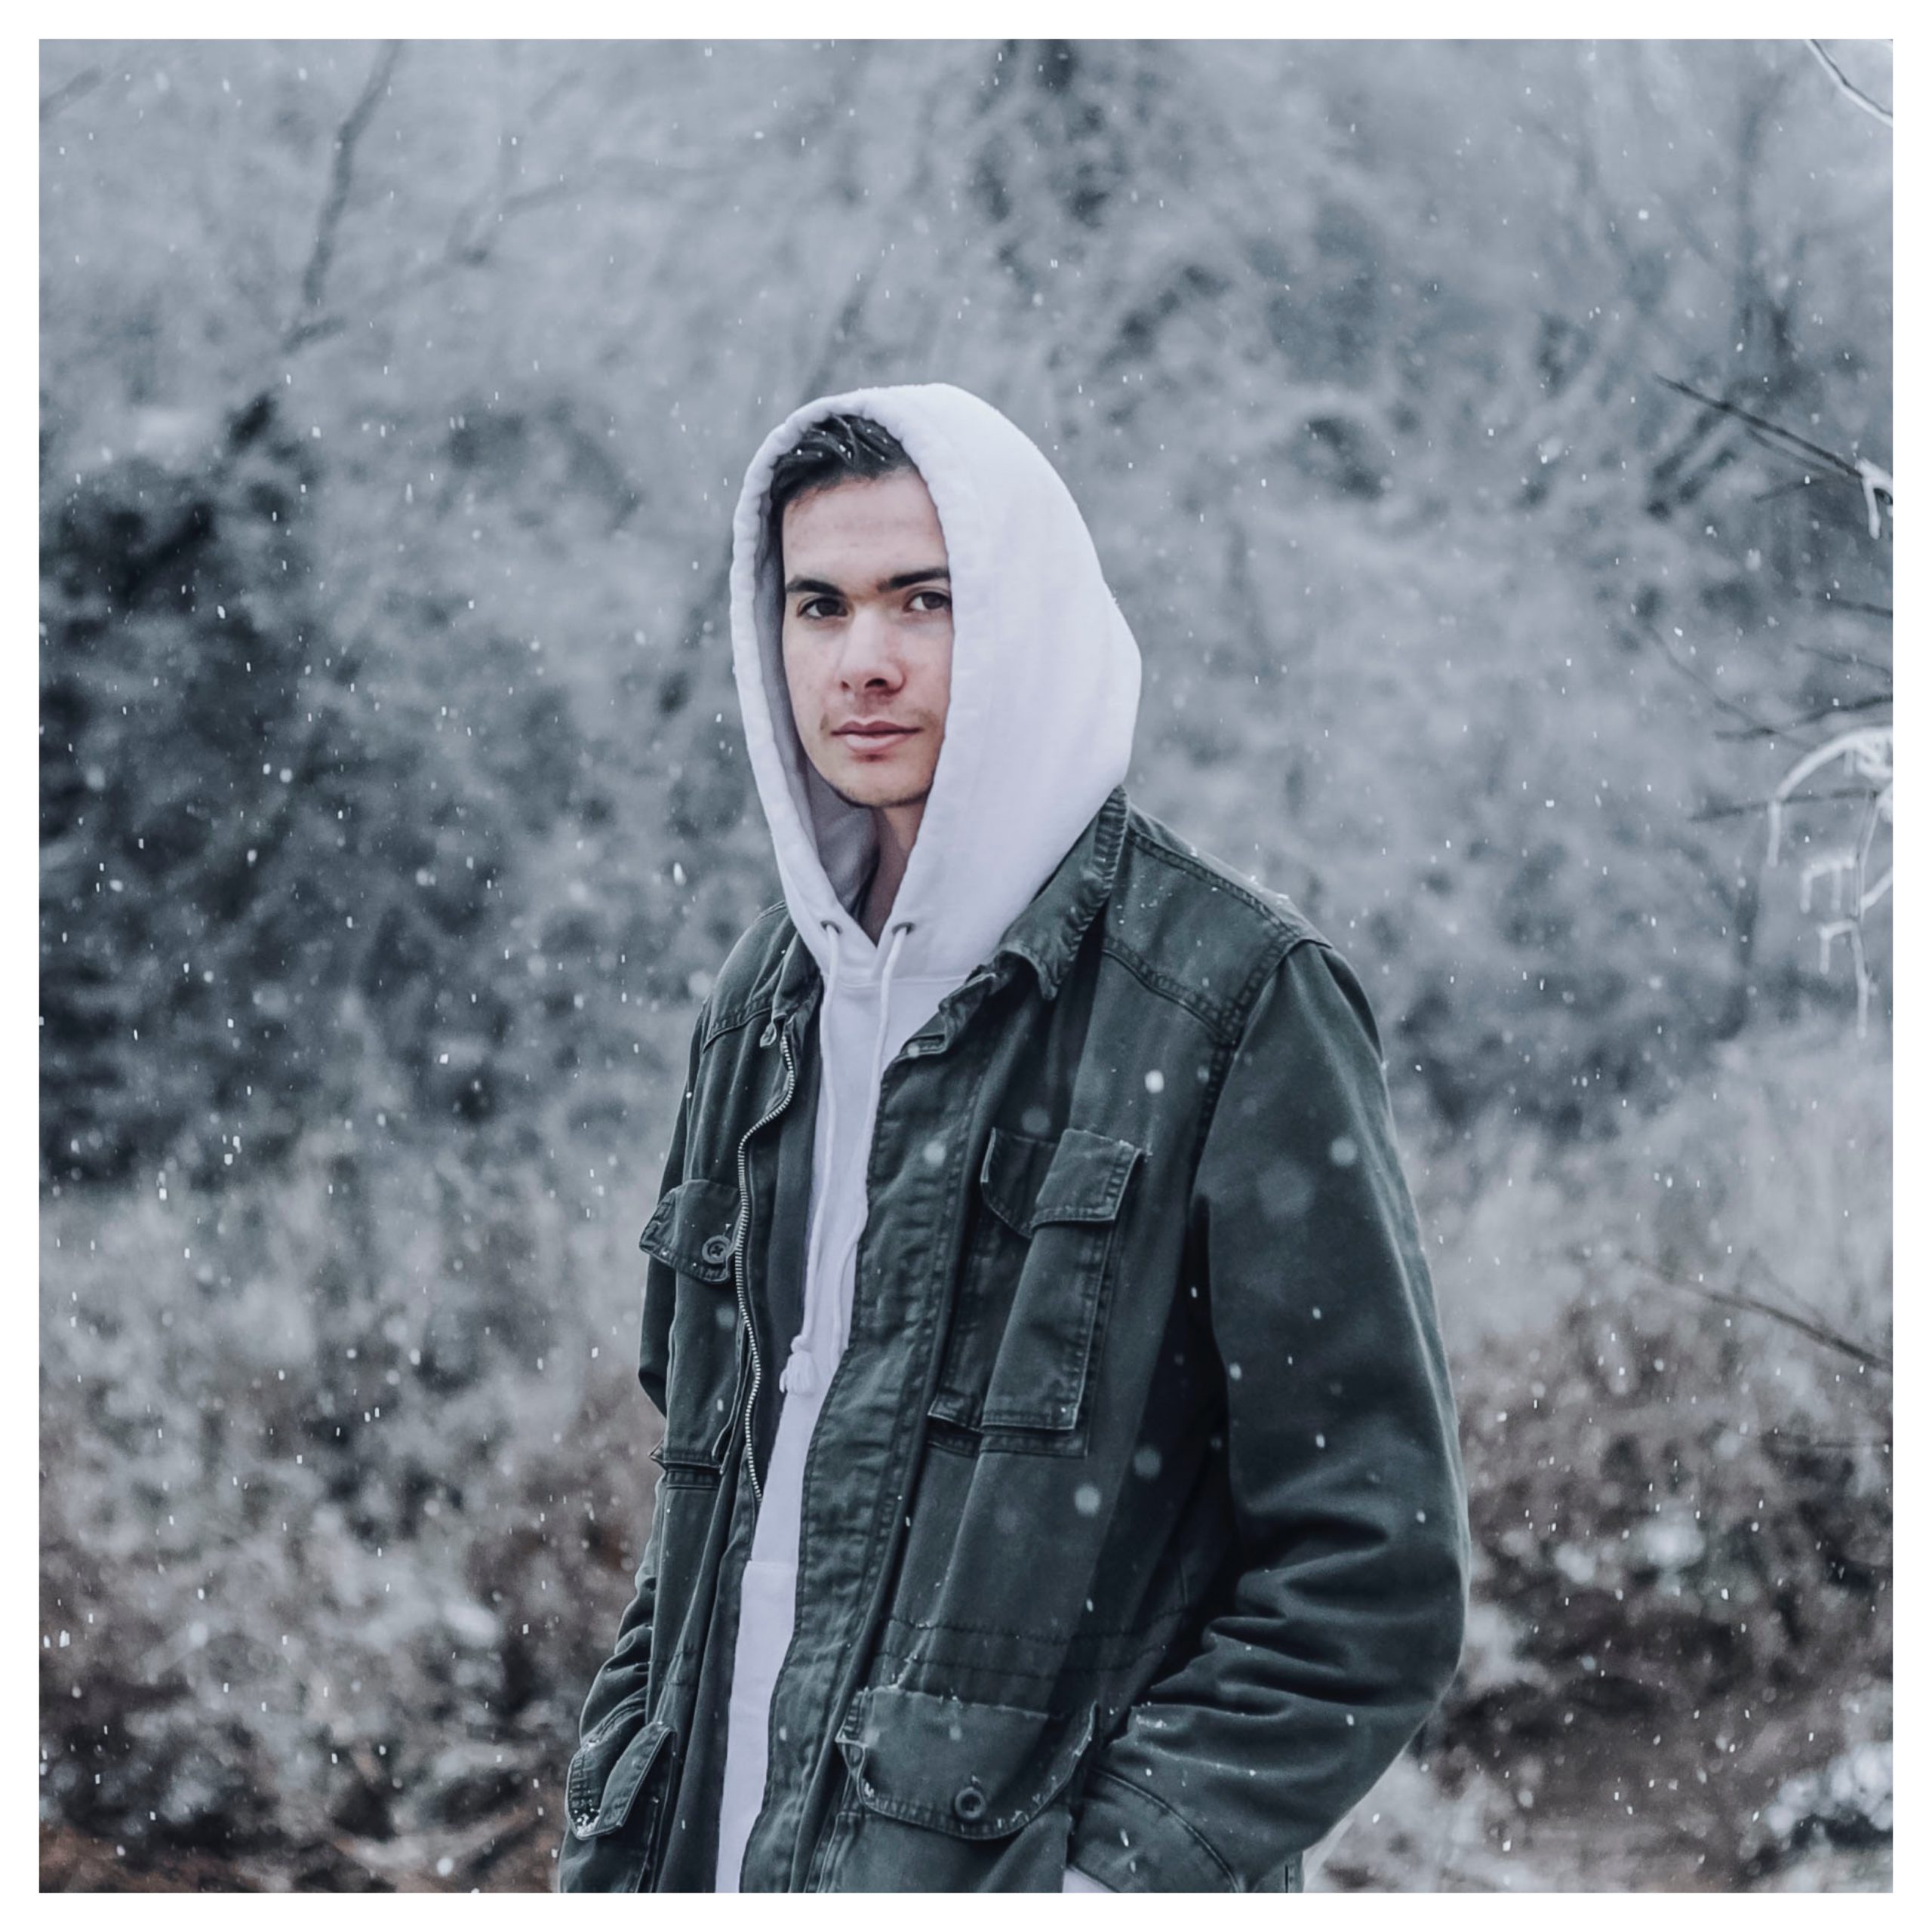 jongen in sneeuw instagram filters